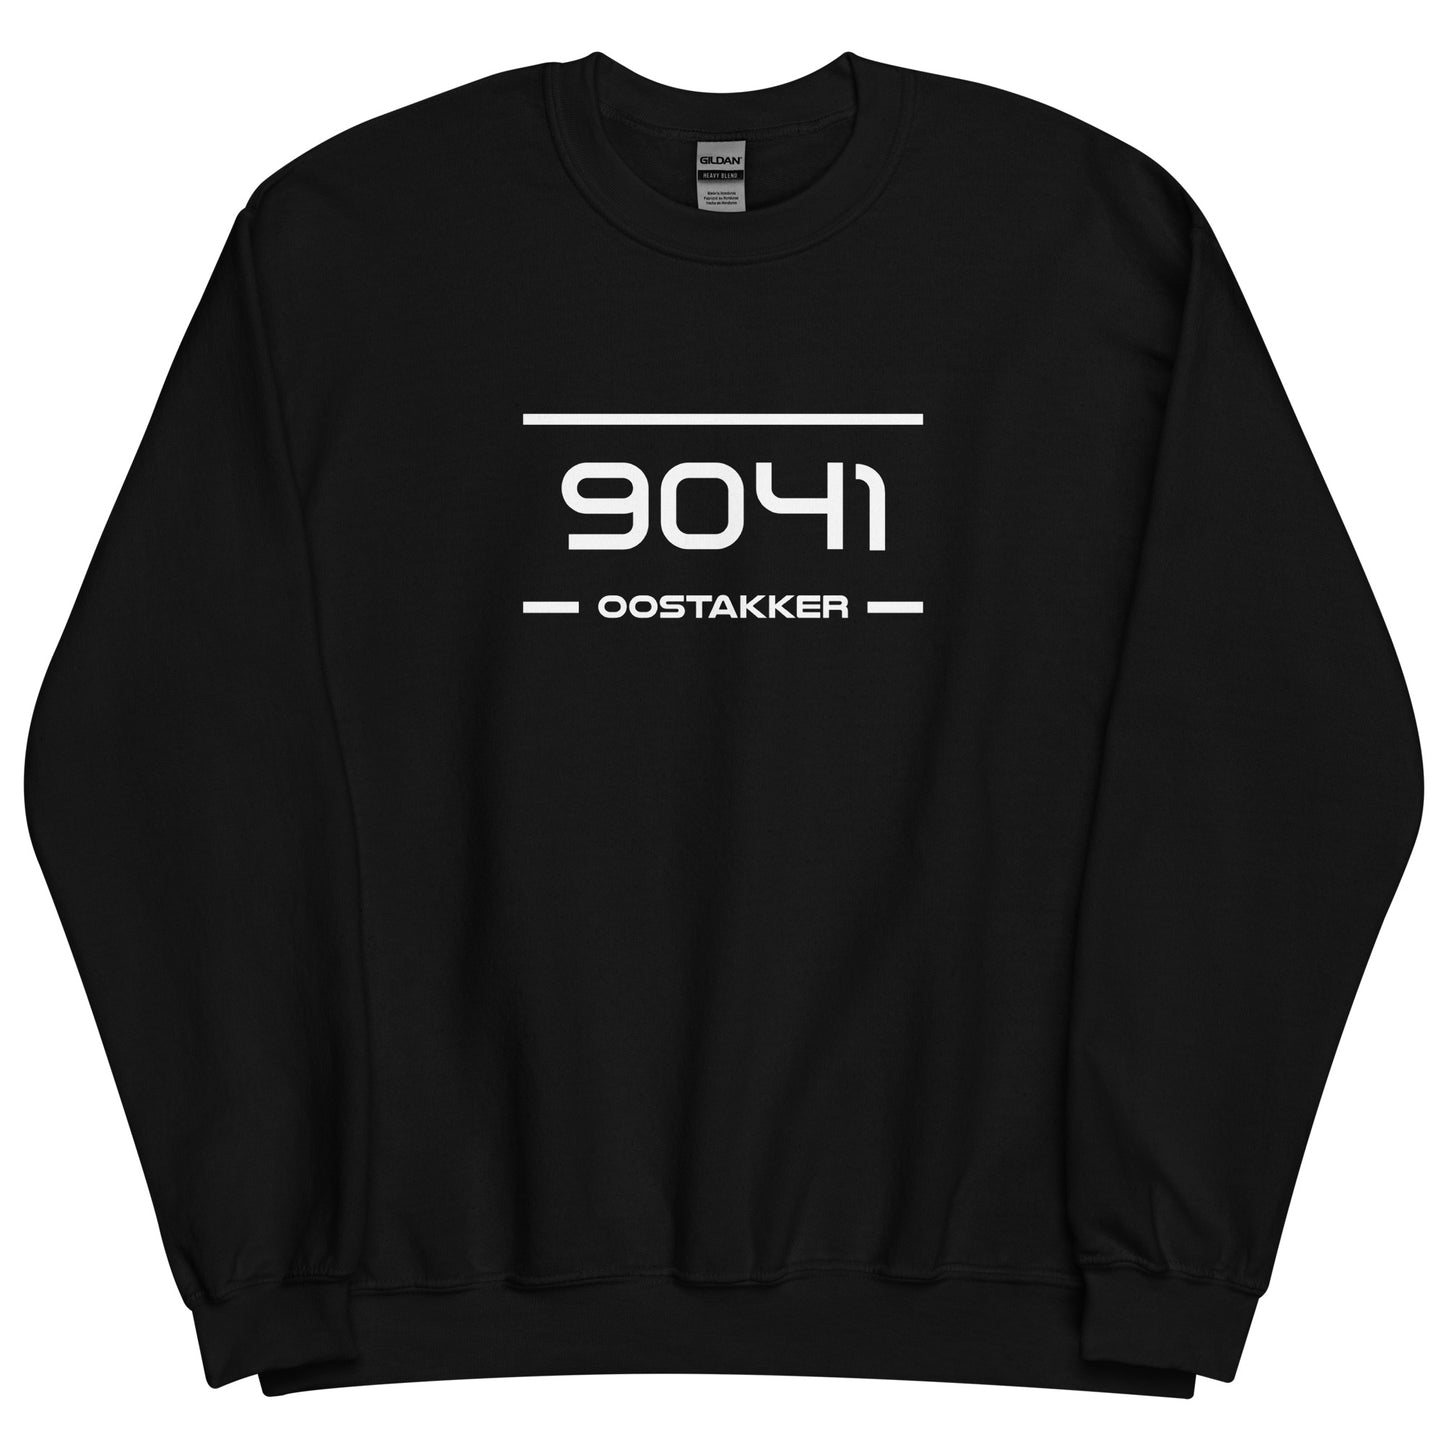 Sweater - 9041 - Oostakker (M/V)